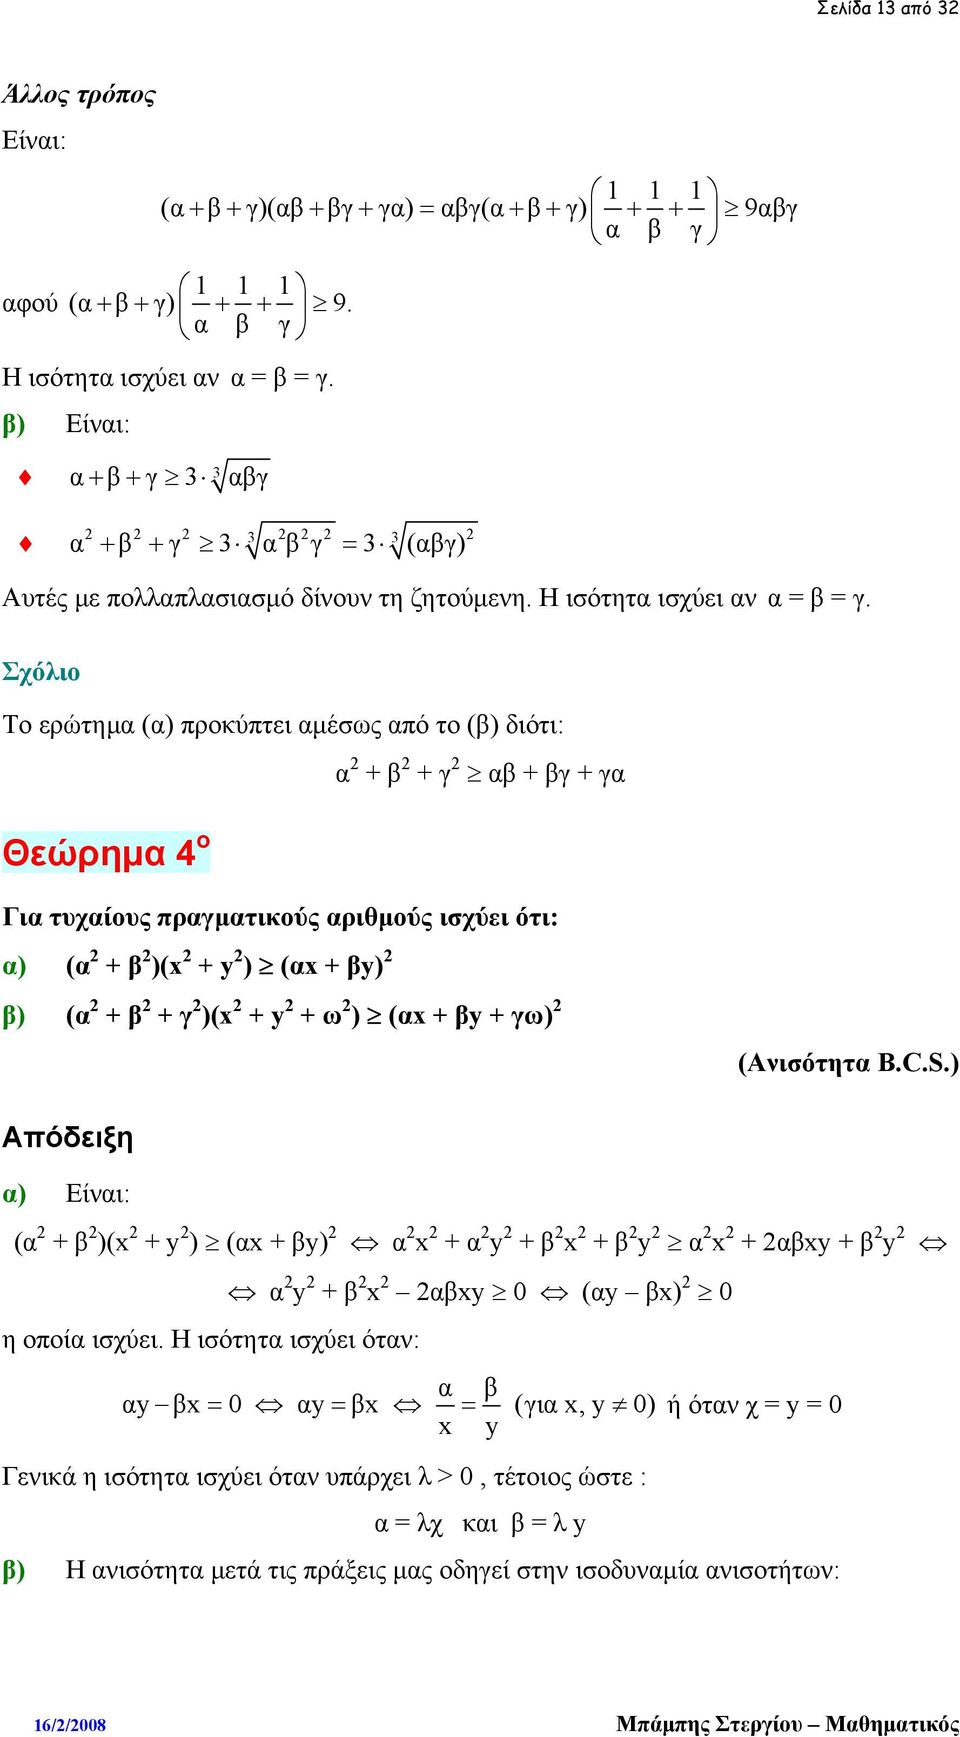 Σχόλιο Το ερώτημα (α) προκύπτει αμέσως από το (β) διότι: α + β + γ αβ + βγ + γα Θεώρημα 4 ο Για τυχαίους πραγματικούς αριθμούς ισχύει ότι: α) (α + β )(x + y ) (αx + βy) Απόδειξη α) Είναι: (α + β )(x